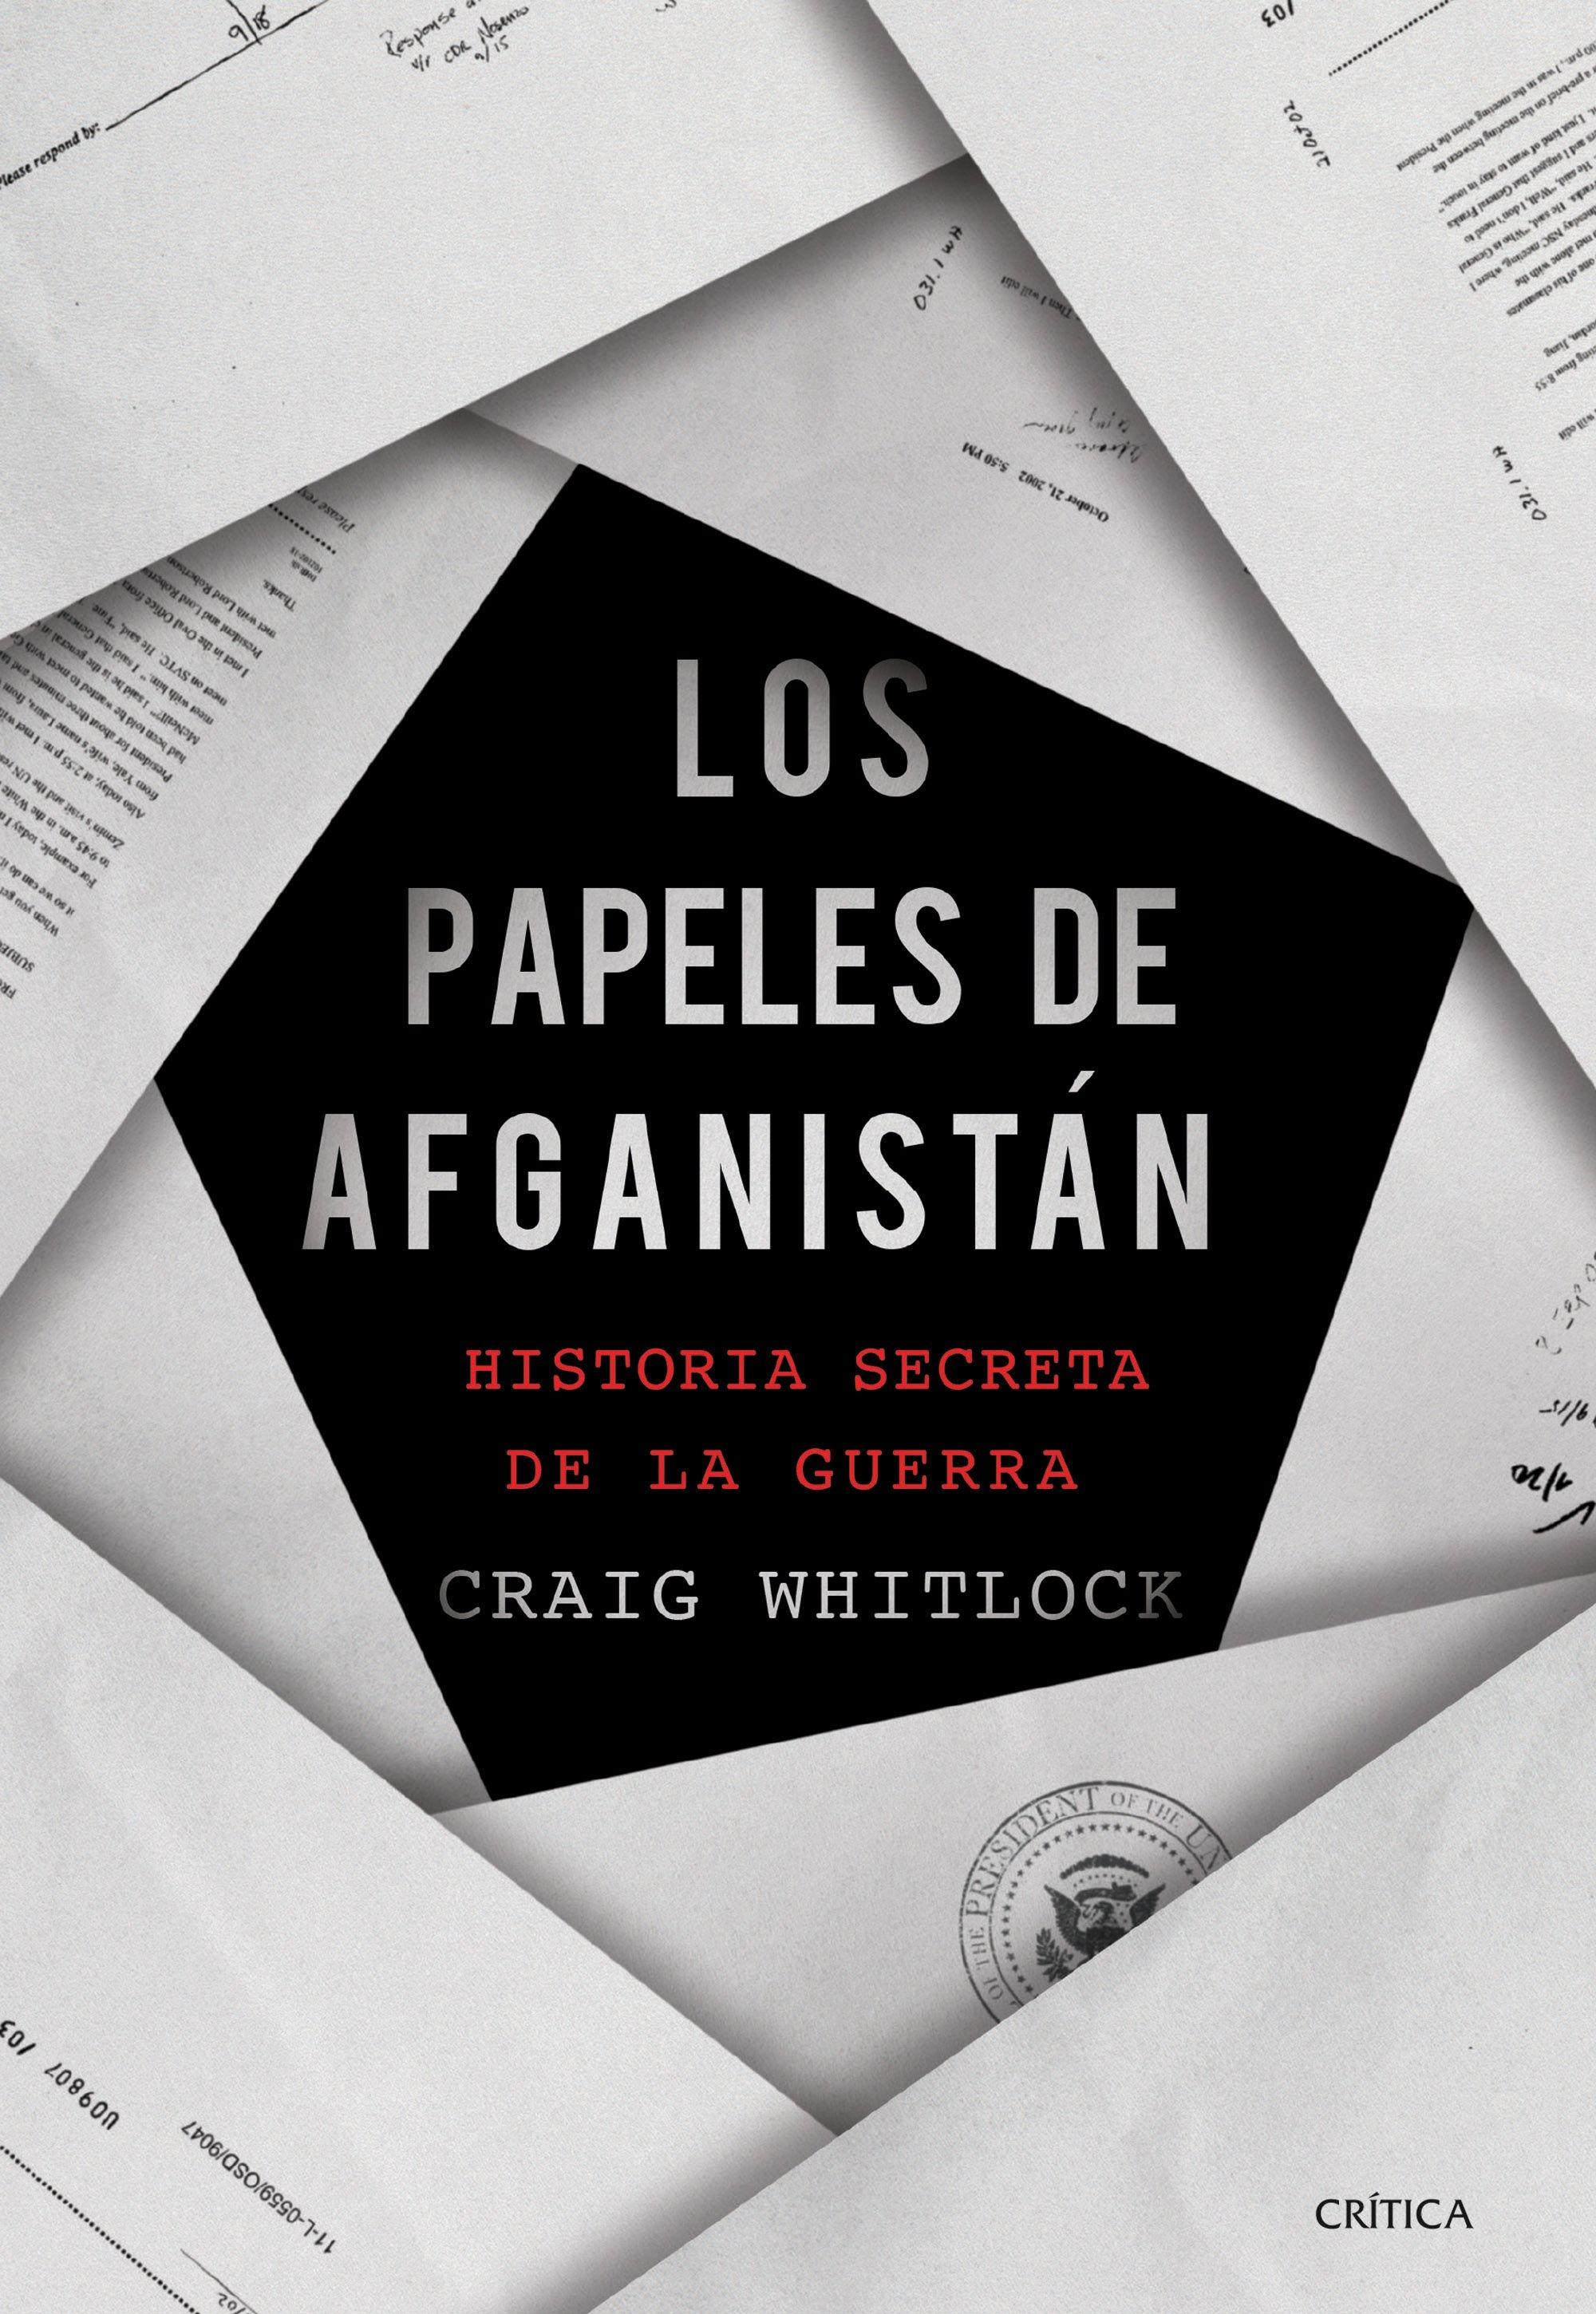 Papeles de Afganistán, Los "Historia secreta de la guerra"